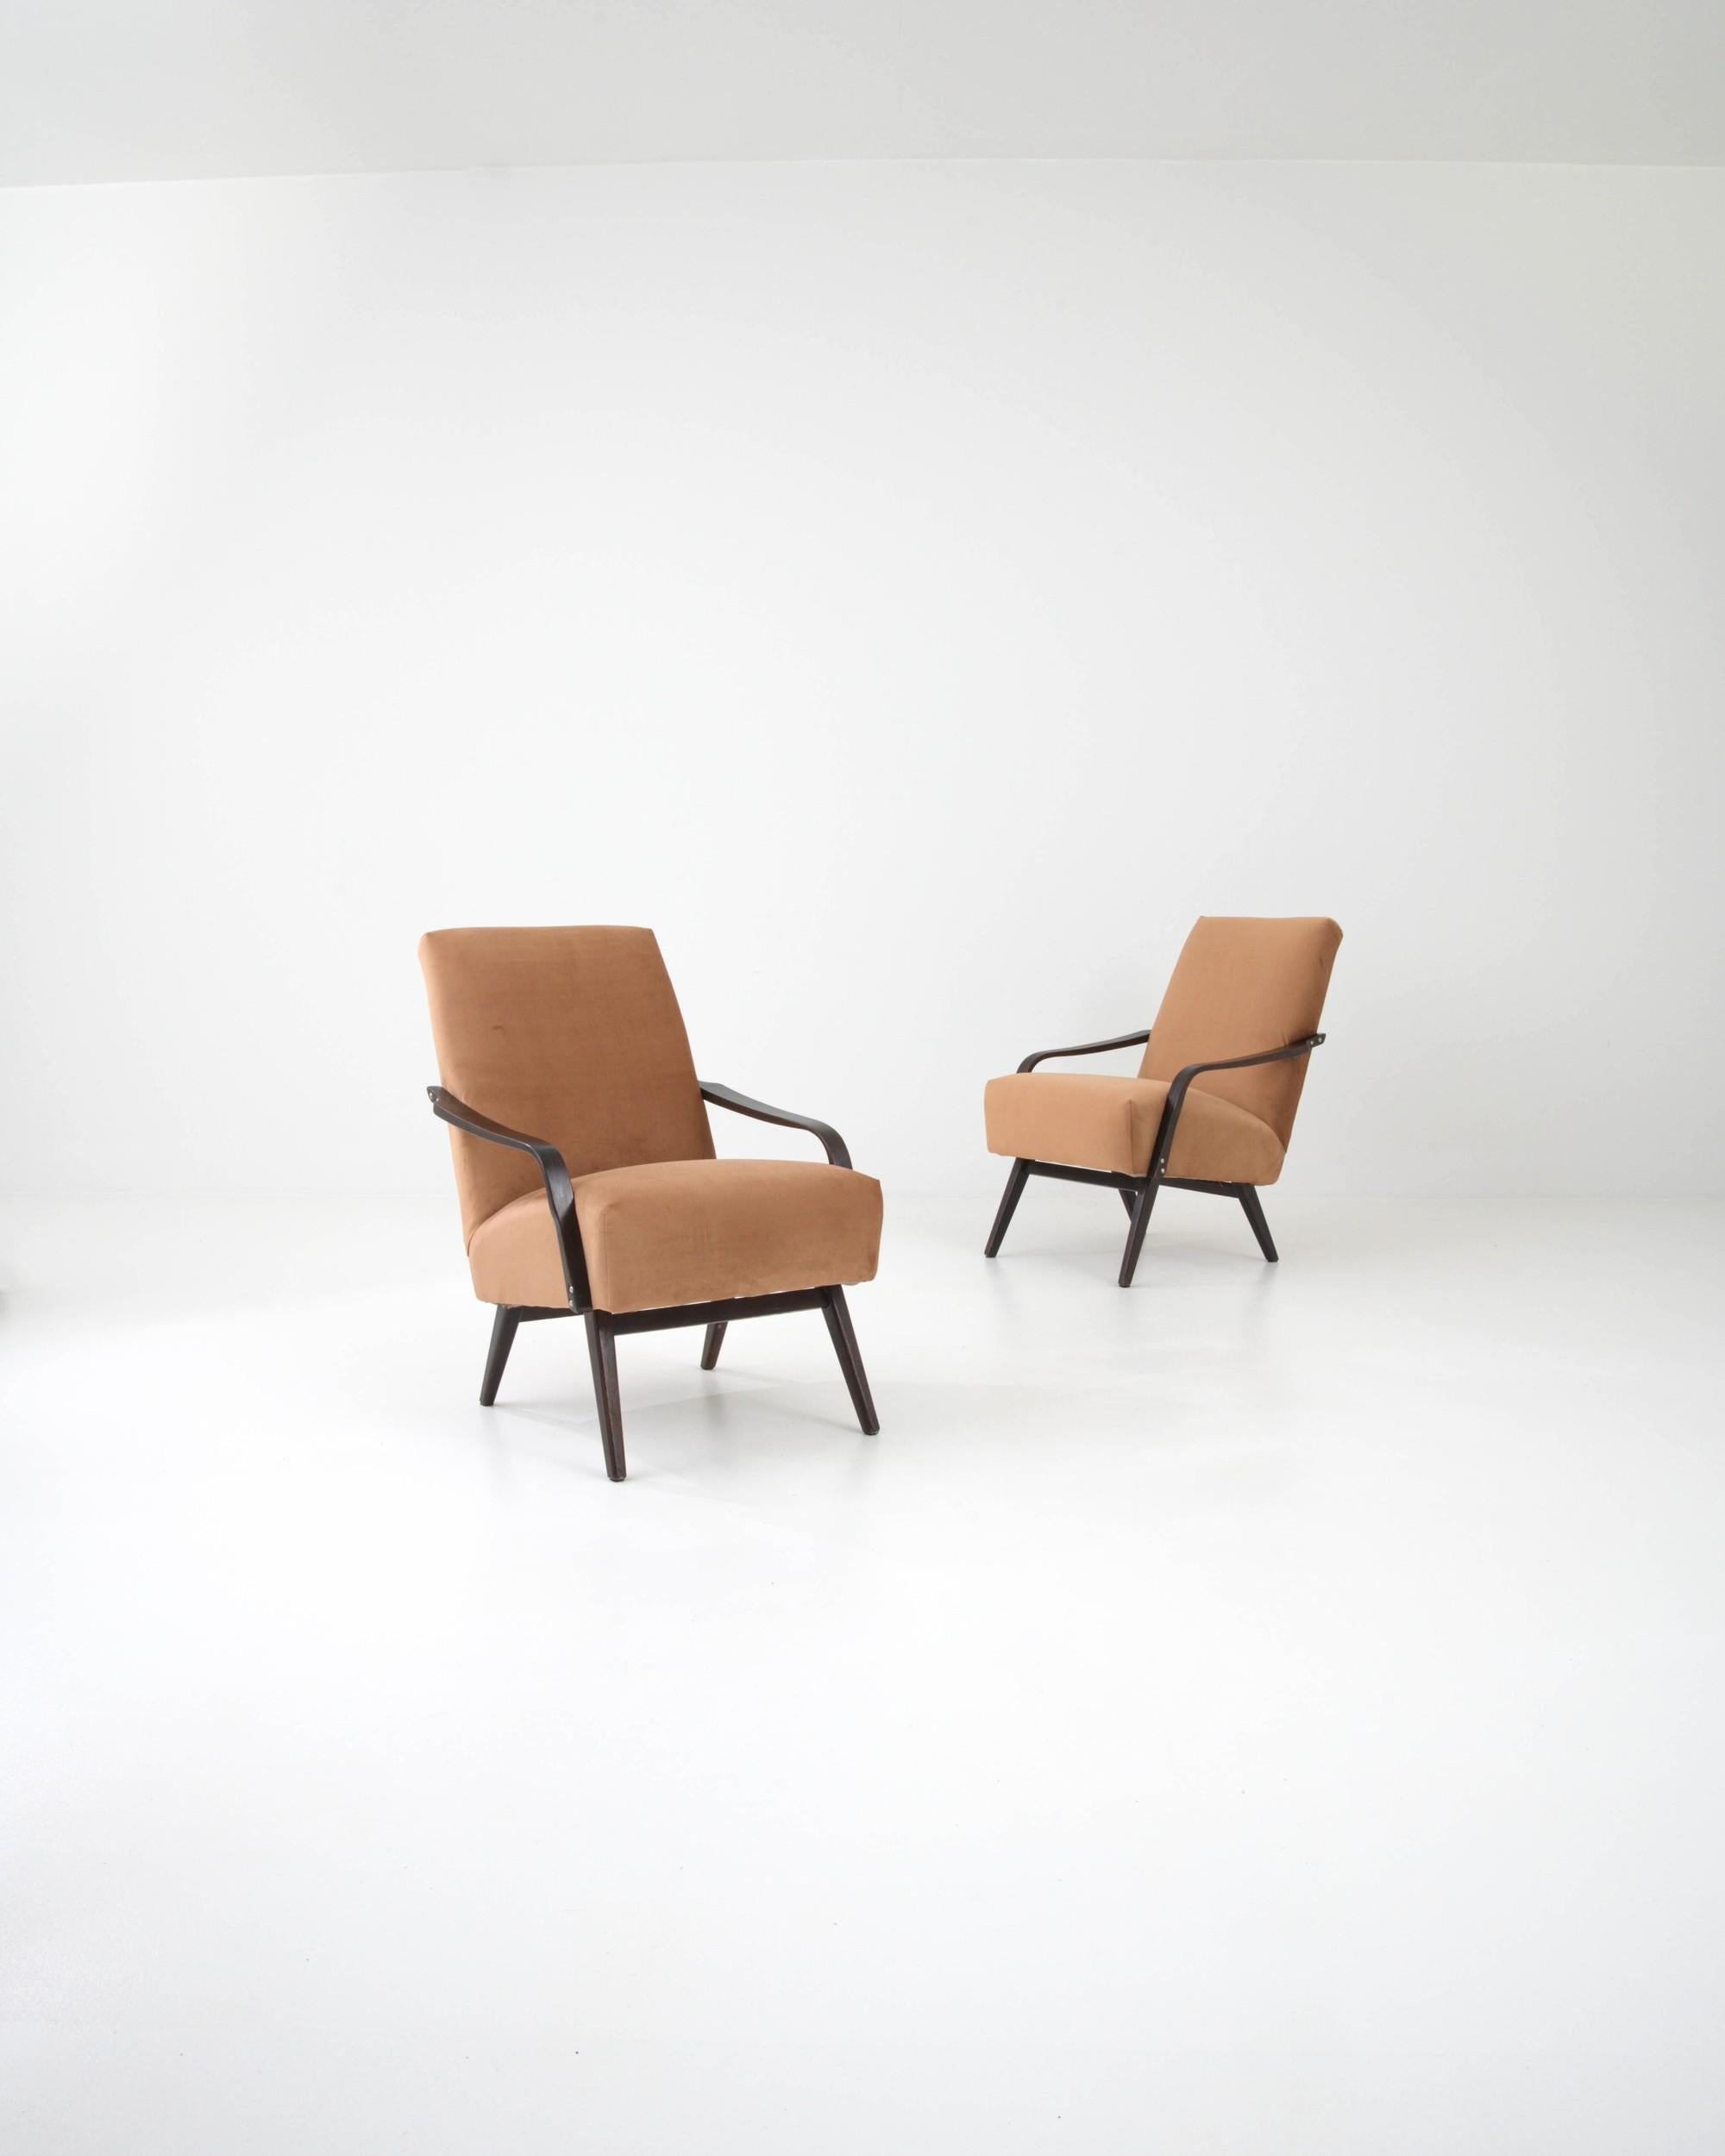 Cette magnifique paire de fauteuils modernes du milieu du siècle a été fabriquée en Tchécoslovaquie par le célèbre fabricant de meubles TON, le design étant attribué à J. Smidek. Bas et confortable, le siège profond tapissé de bouclettes douces est